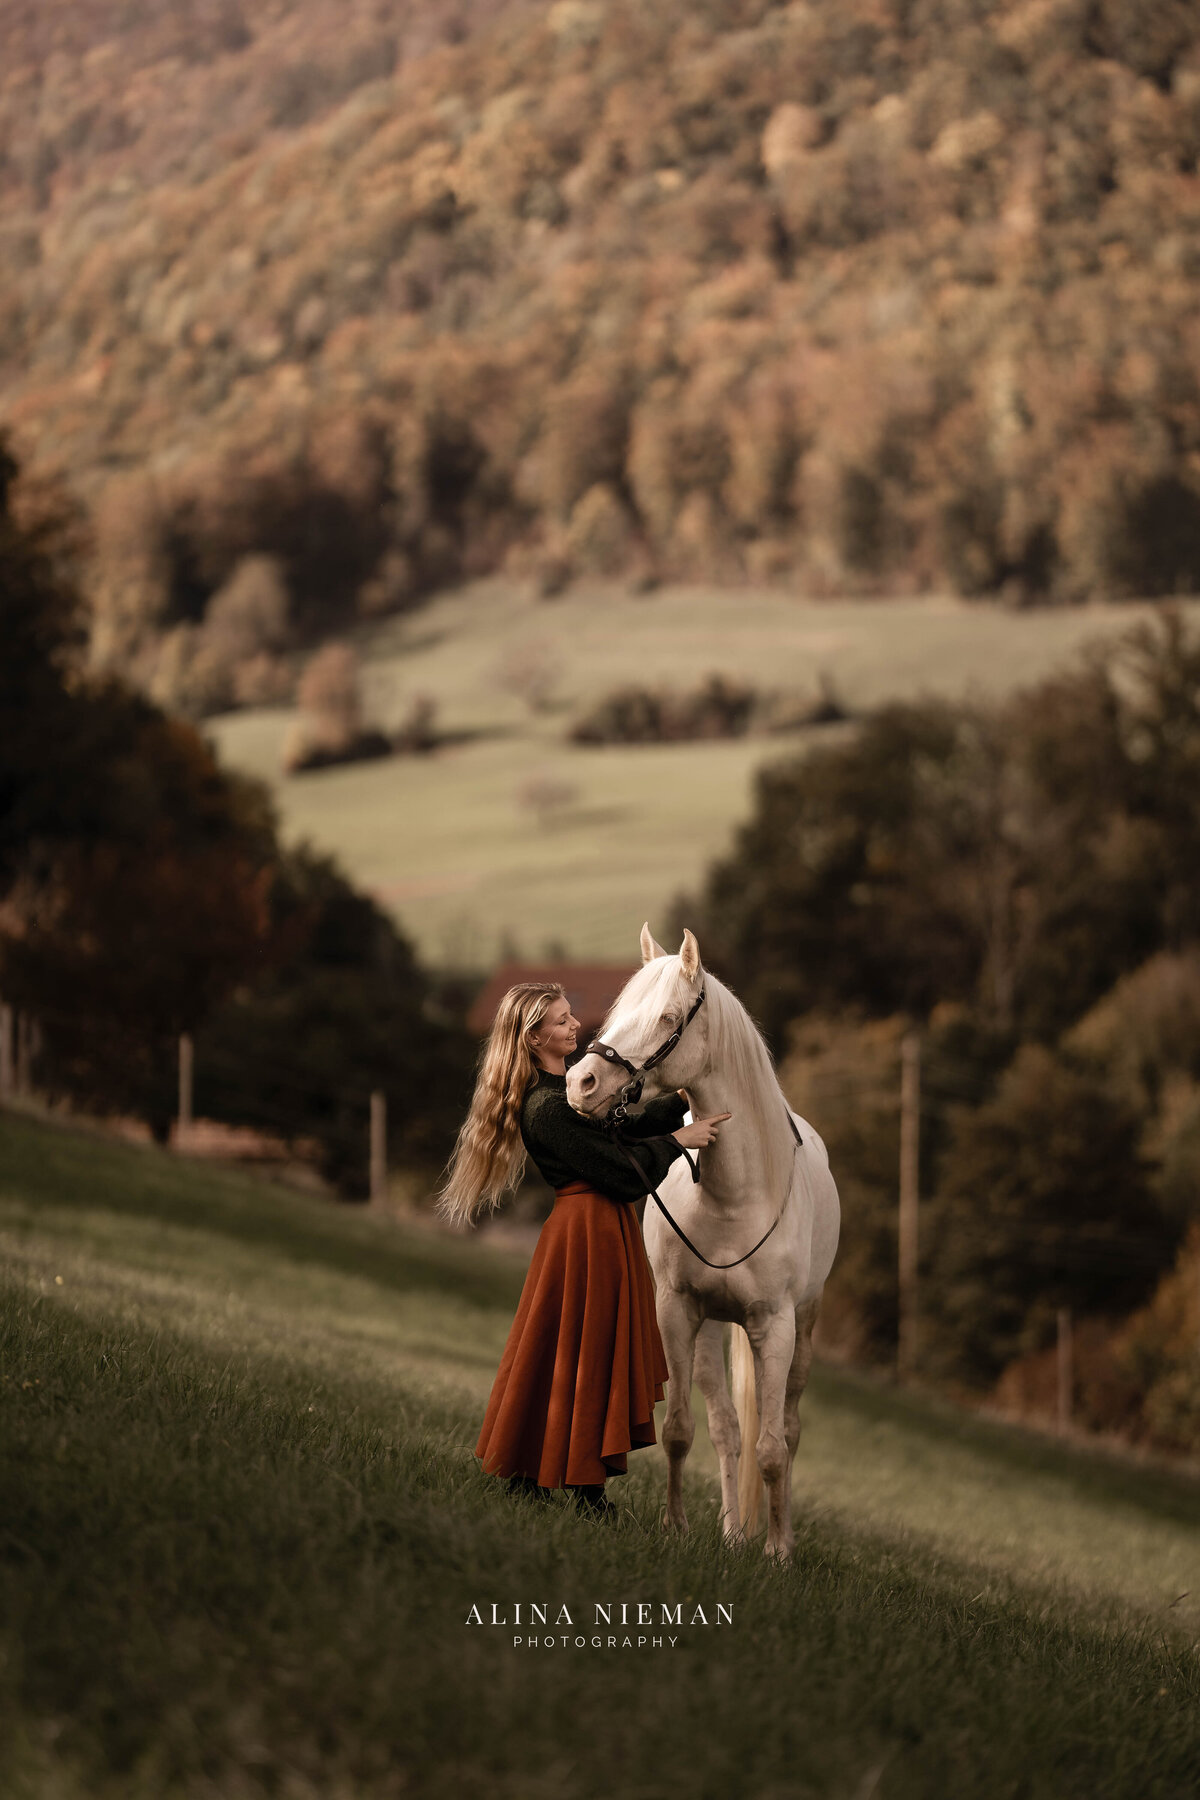 Als paarden fotograaf kom ik ook in andere landen, bv: Zwitsterland om ook daar prachtige combinaties op foto te zetten.